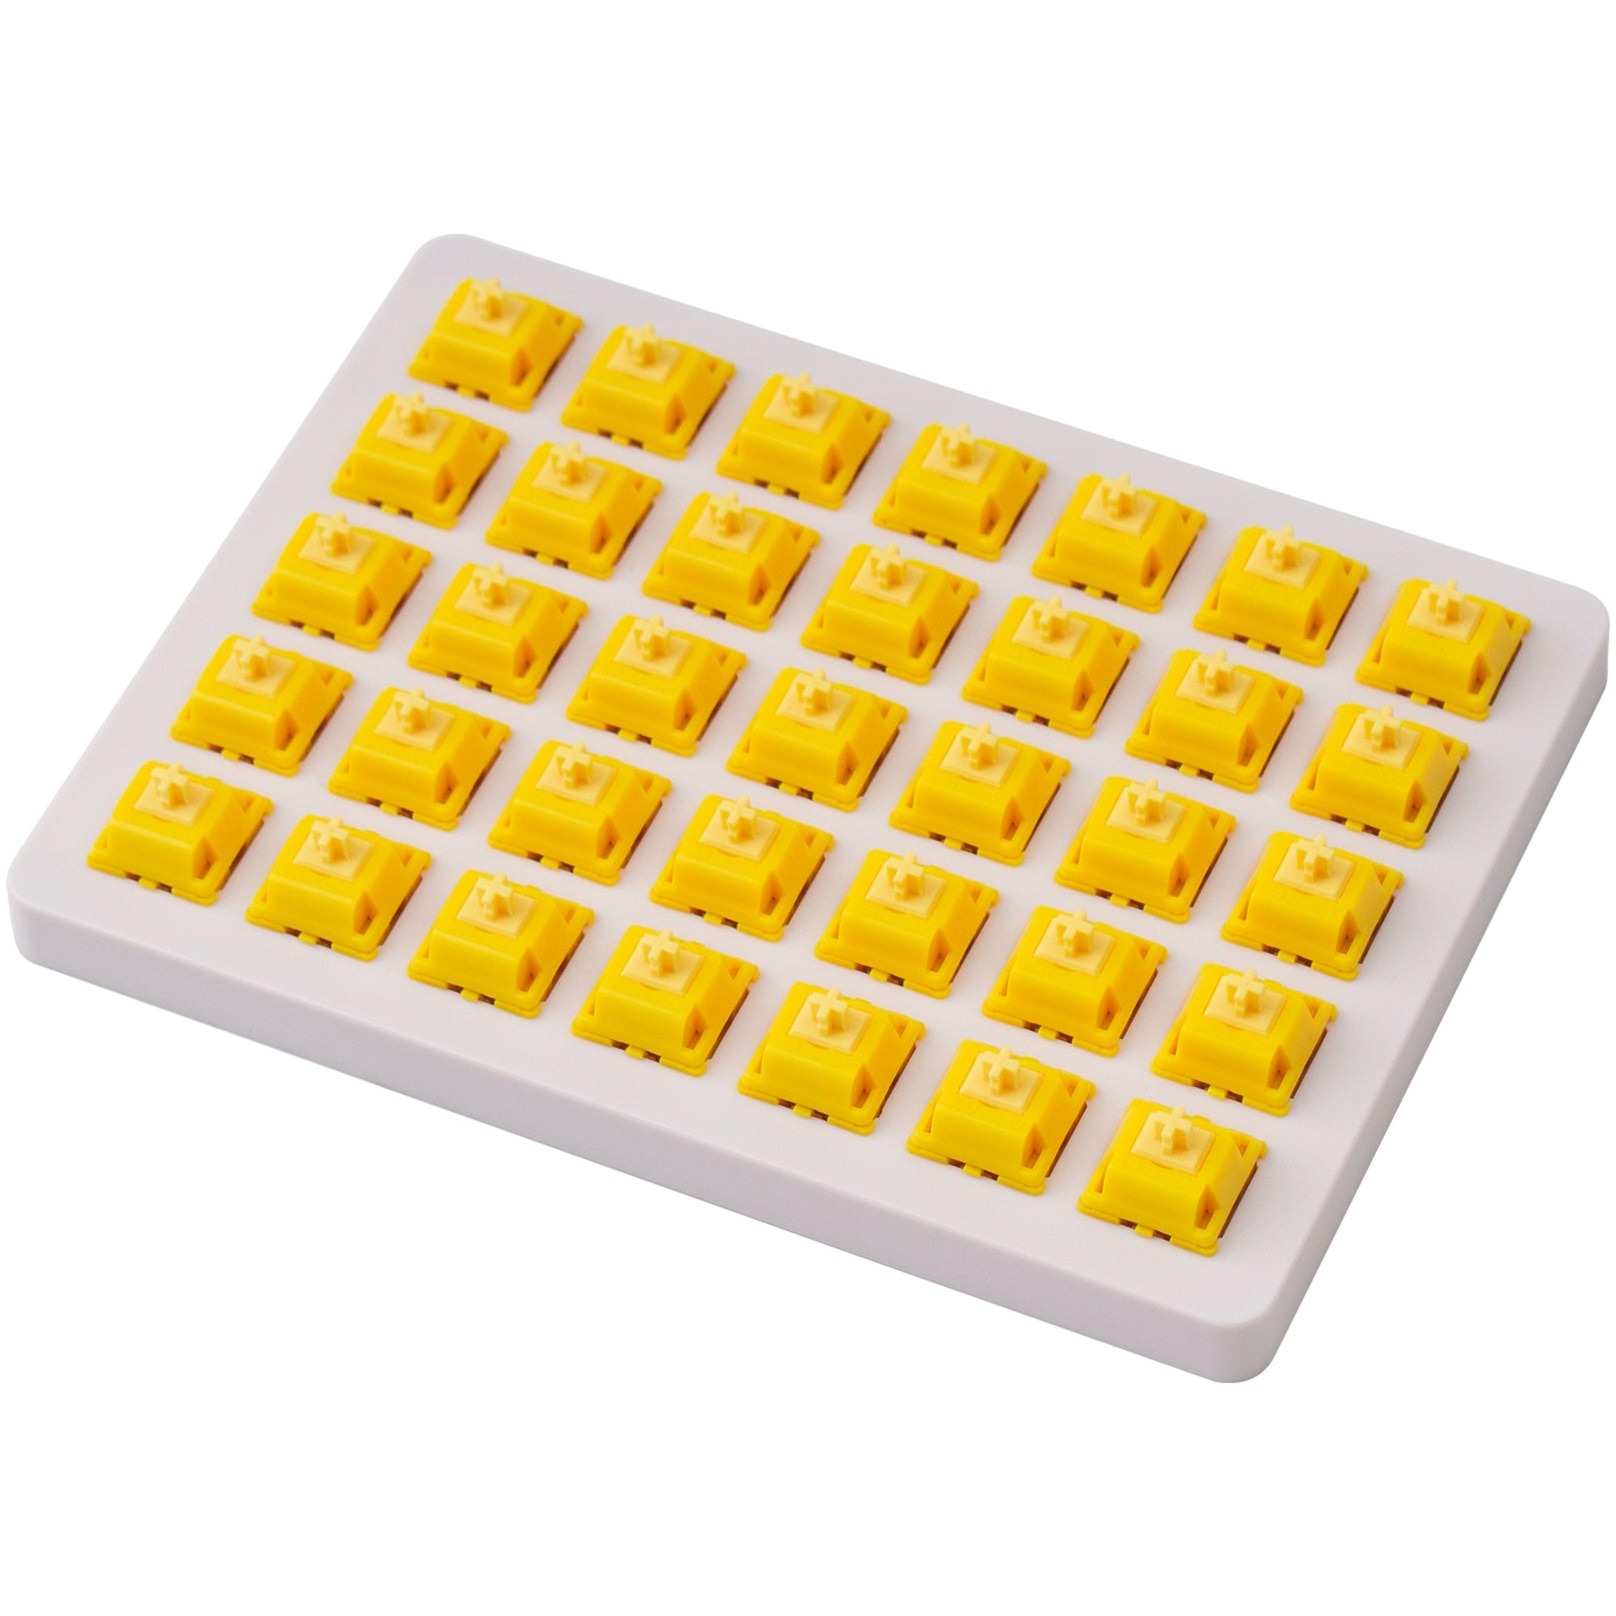 Image of Alternate - Gateron Cap Golden-Yellow Switch-Set, Tastenschalter online einkaufen bei Alternate